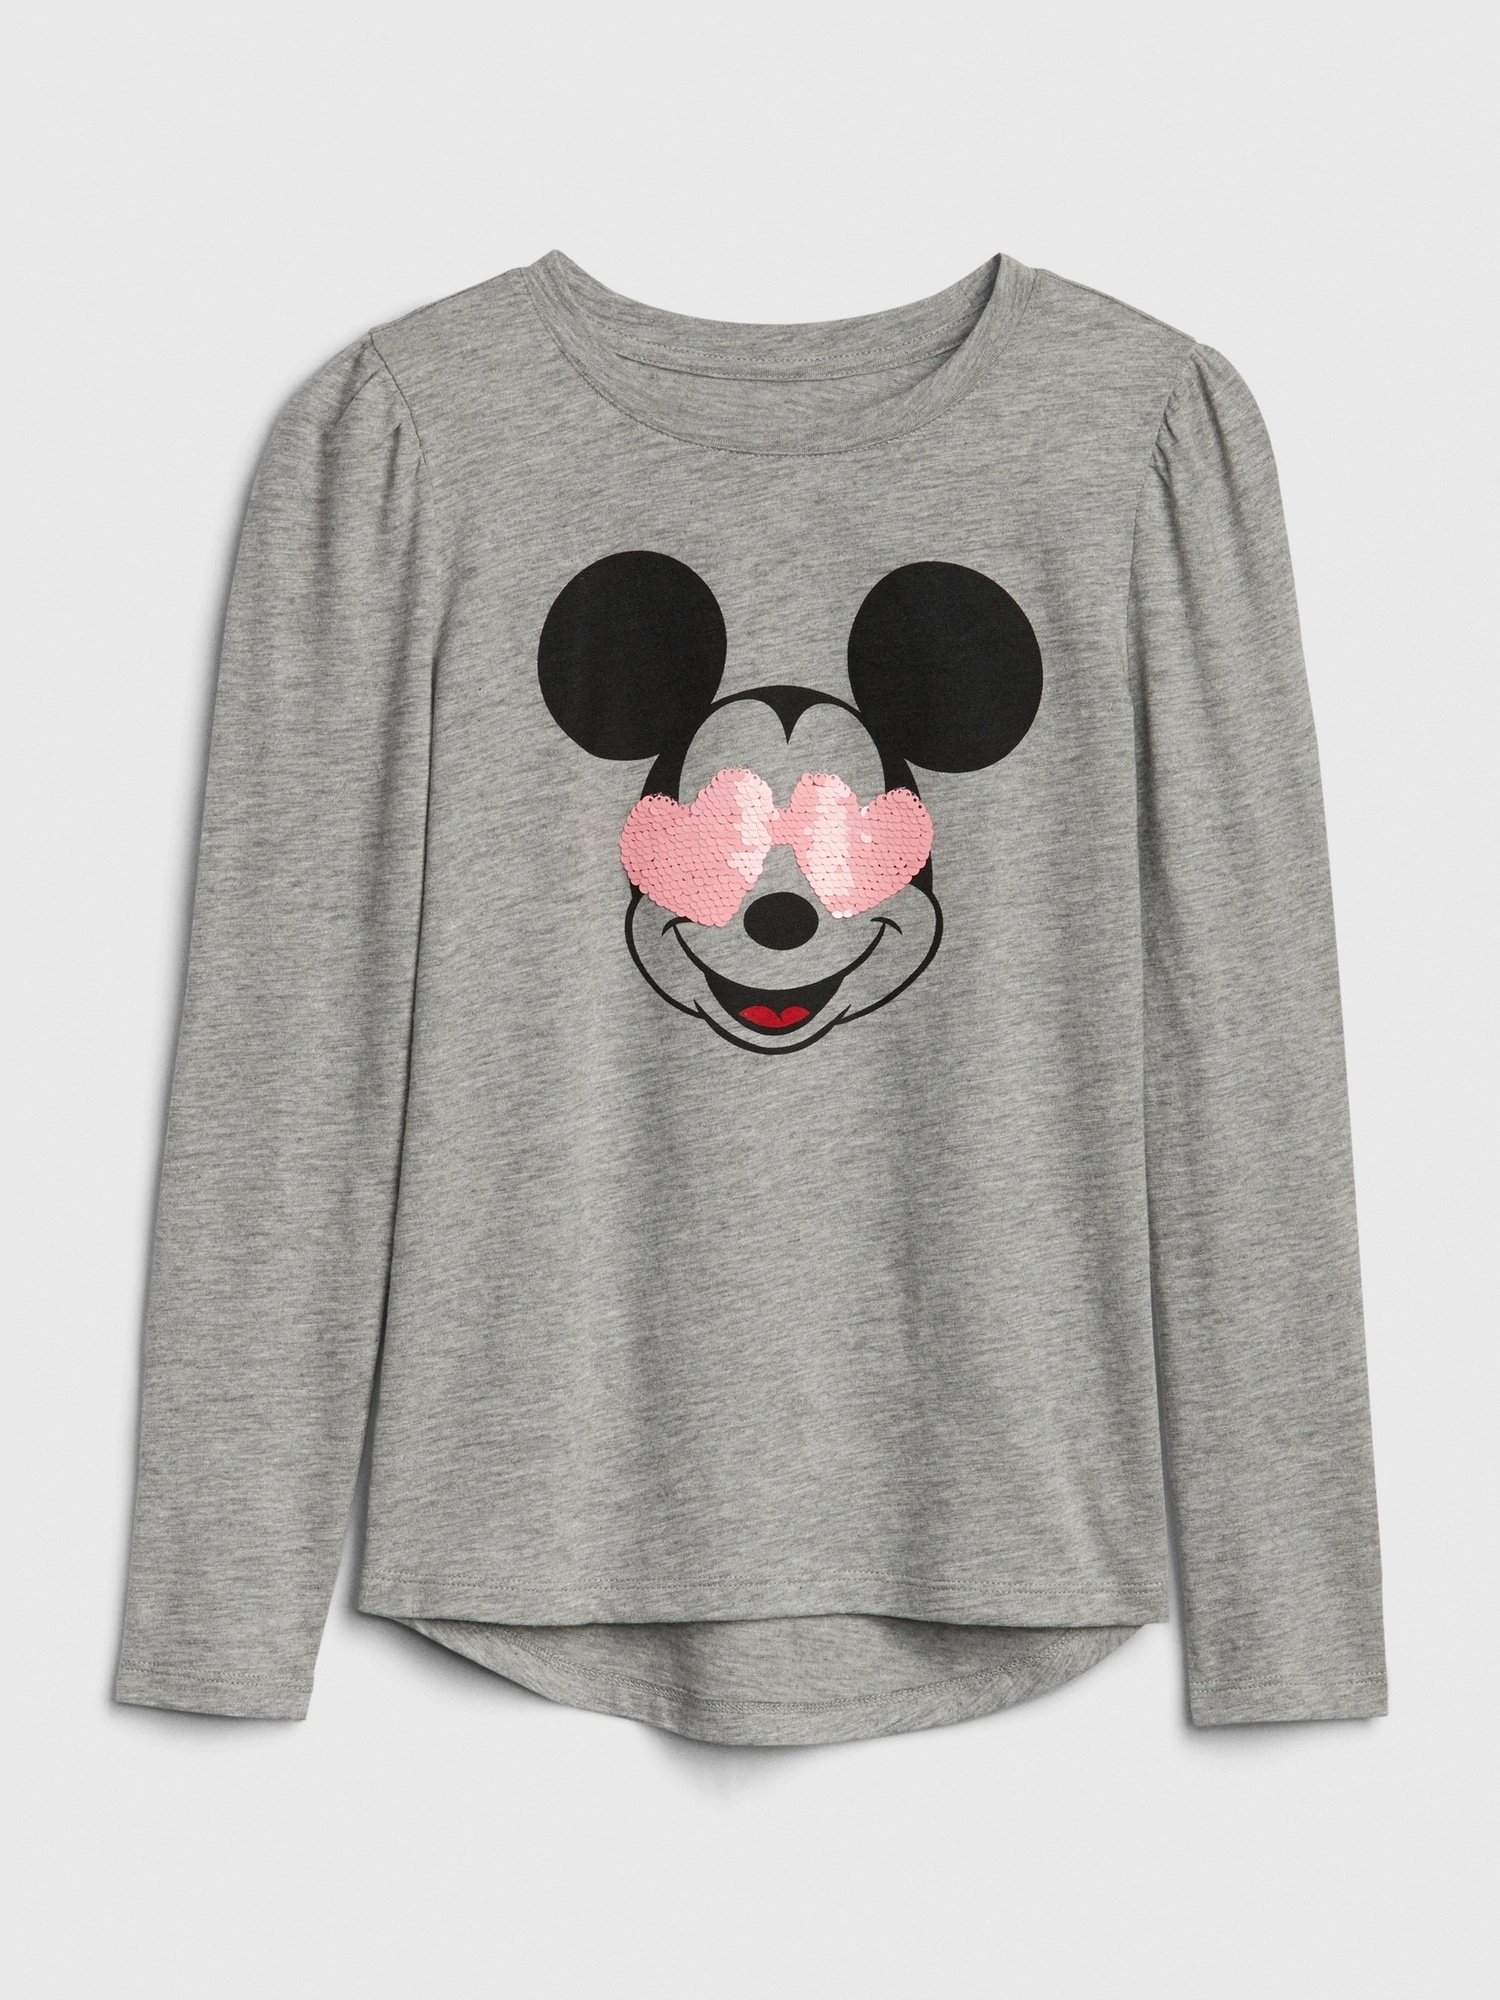 女童裝|Gap x Disney迪士尼聯名 米妮棉質圓領長袖T恤-麻灰色